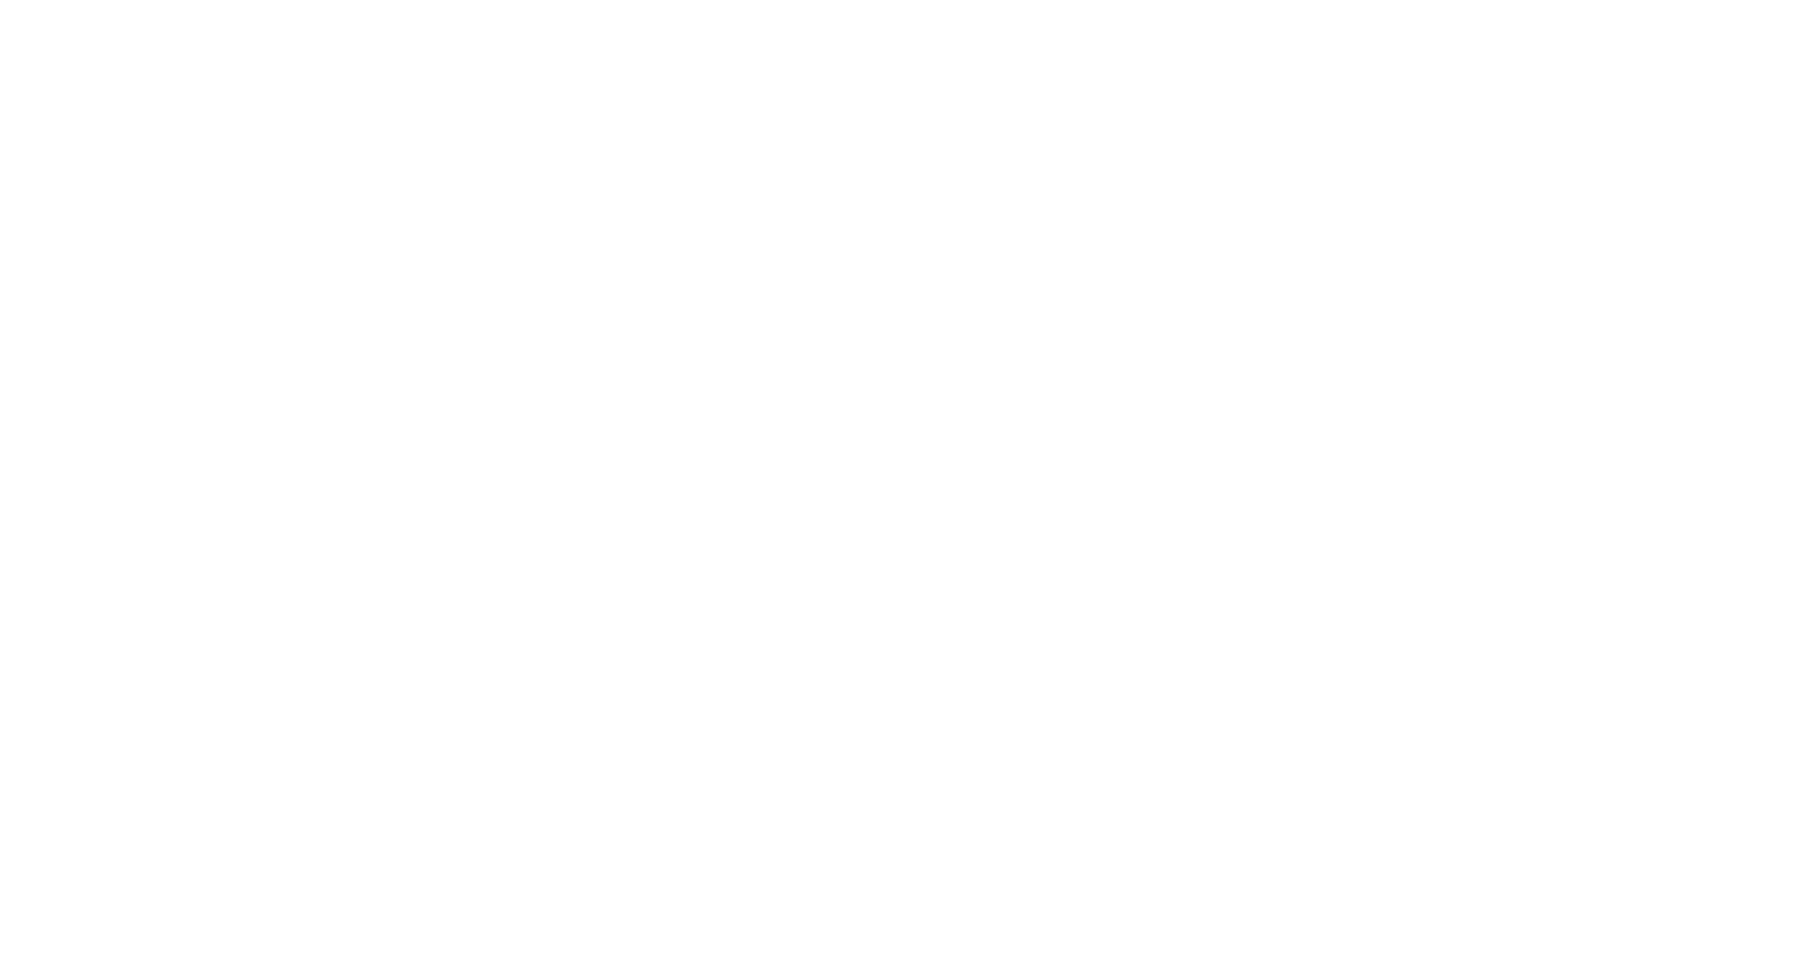 PTWWM Polskie Towarzystwo Wrodzonych Wad Metabolizmu logo transparent white HD